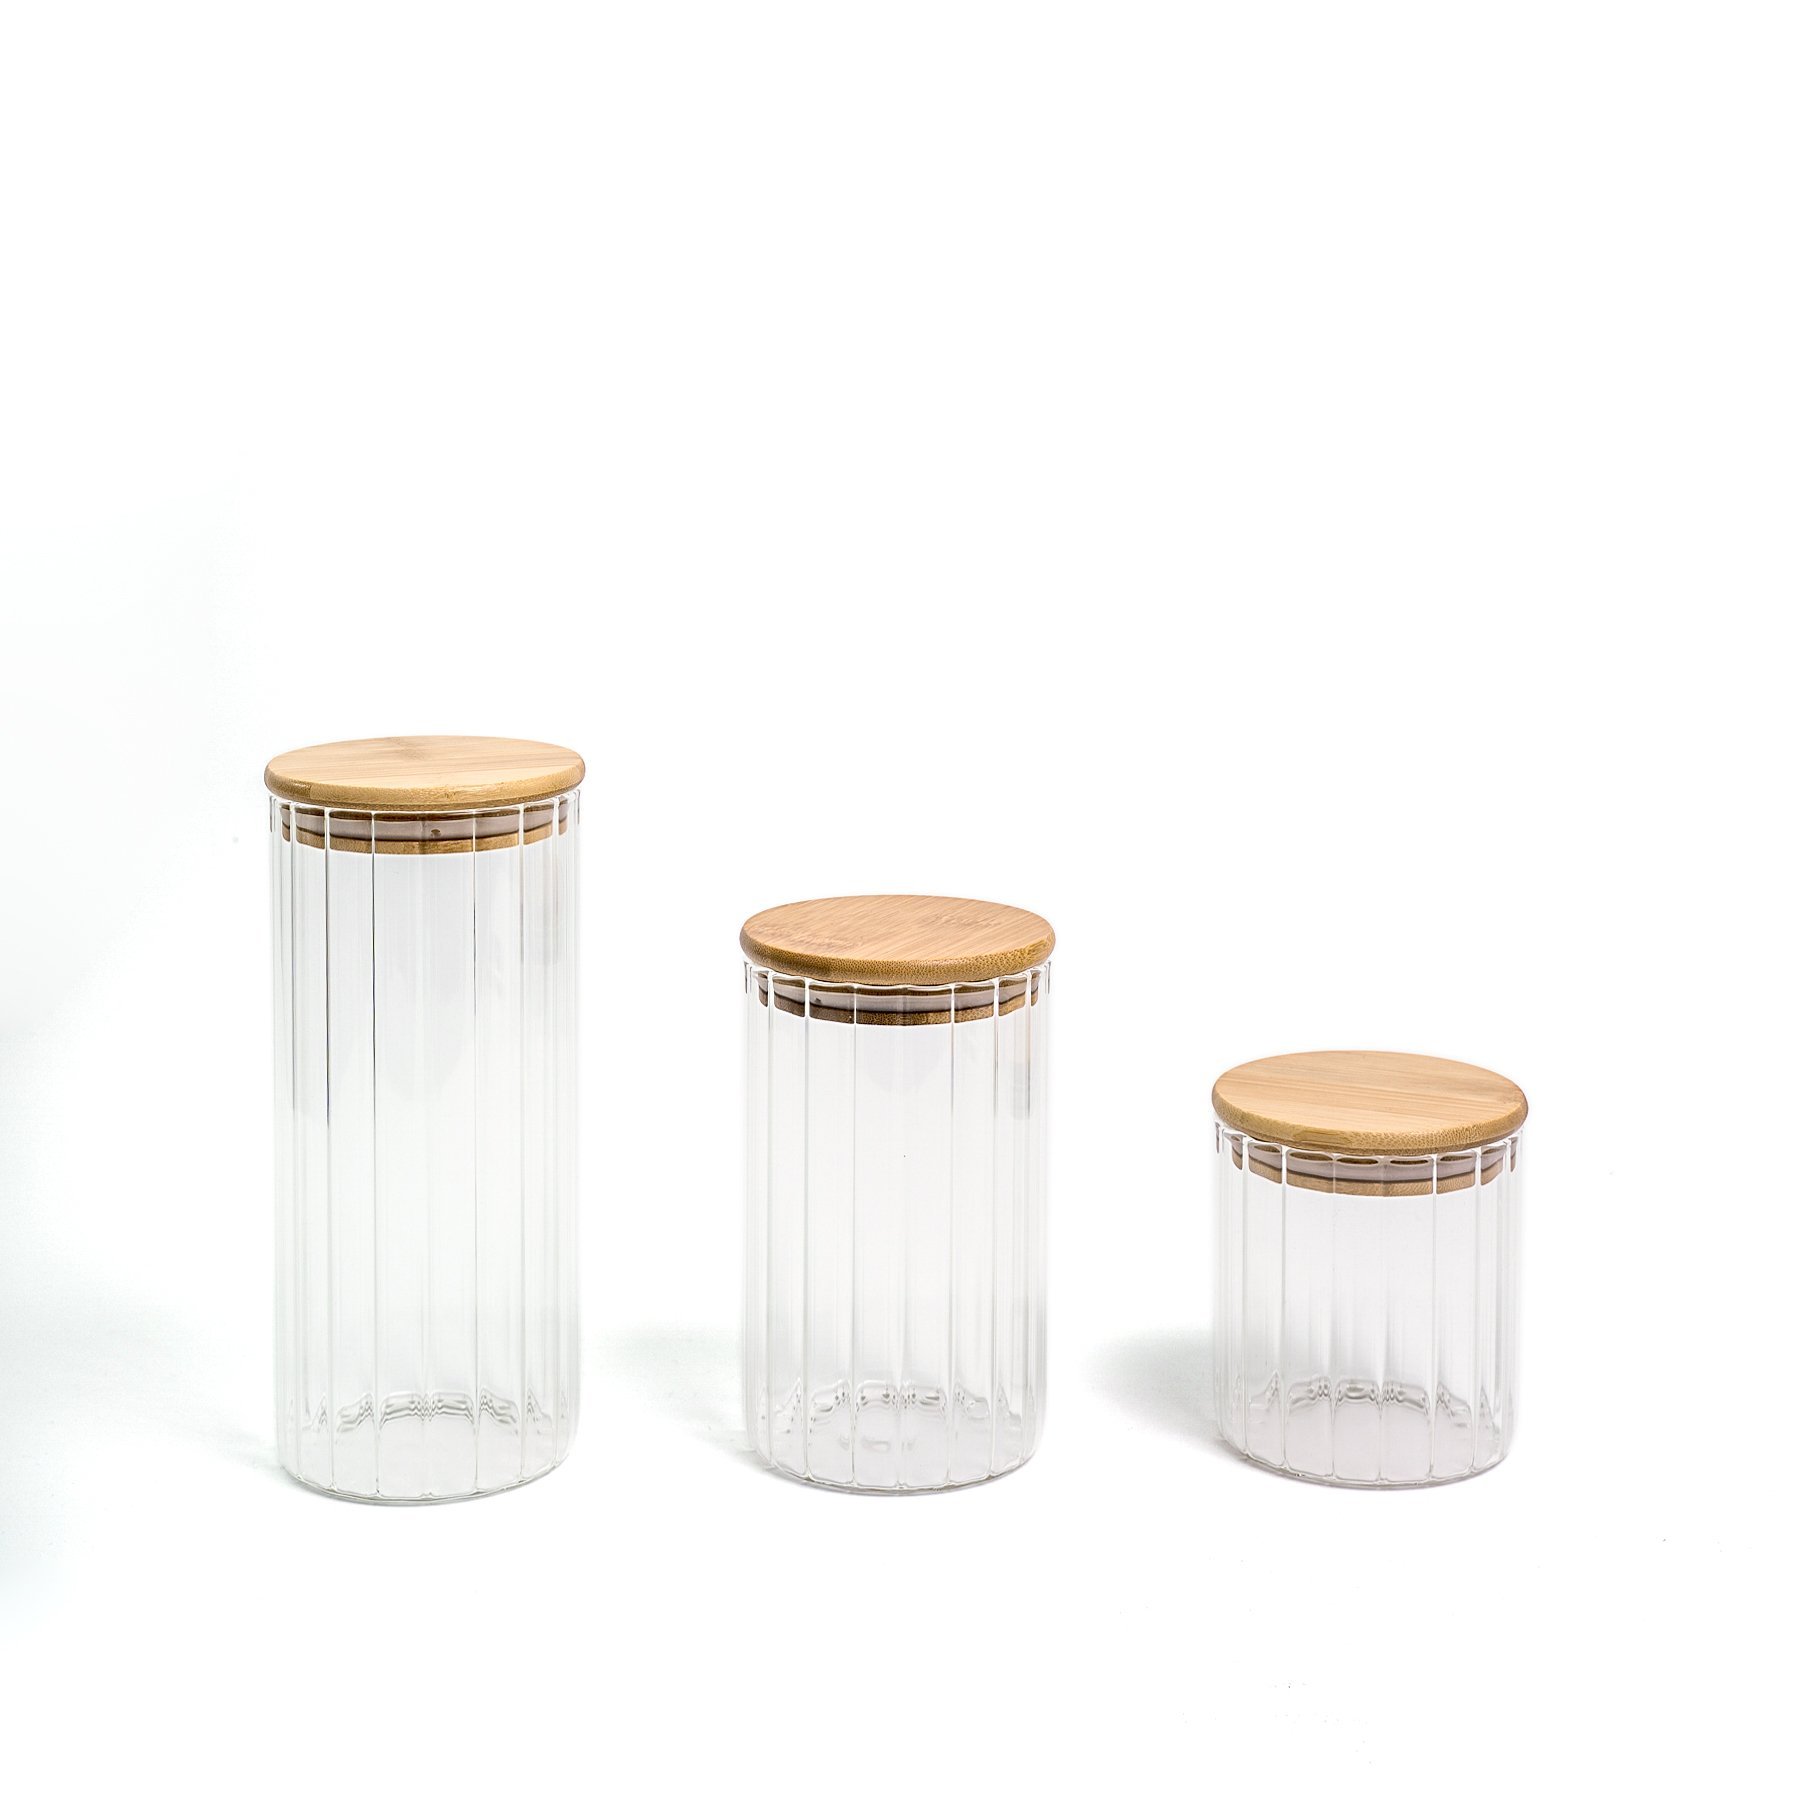 Pote 800ml de vidro canelado com tampa de bambu de mantimento - Oikos - 8